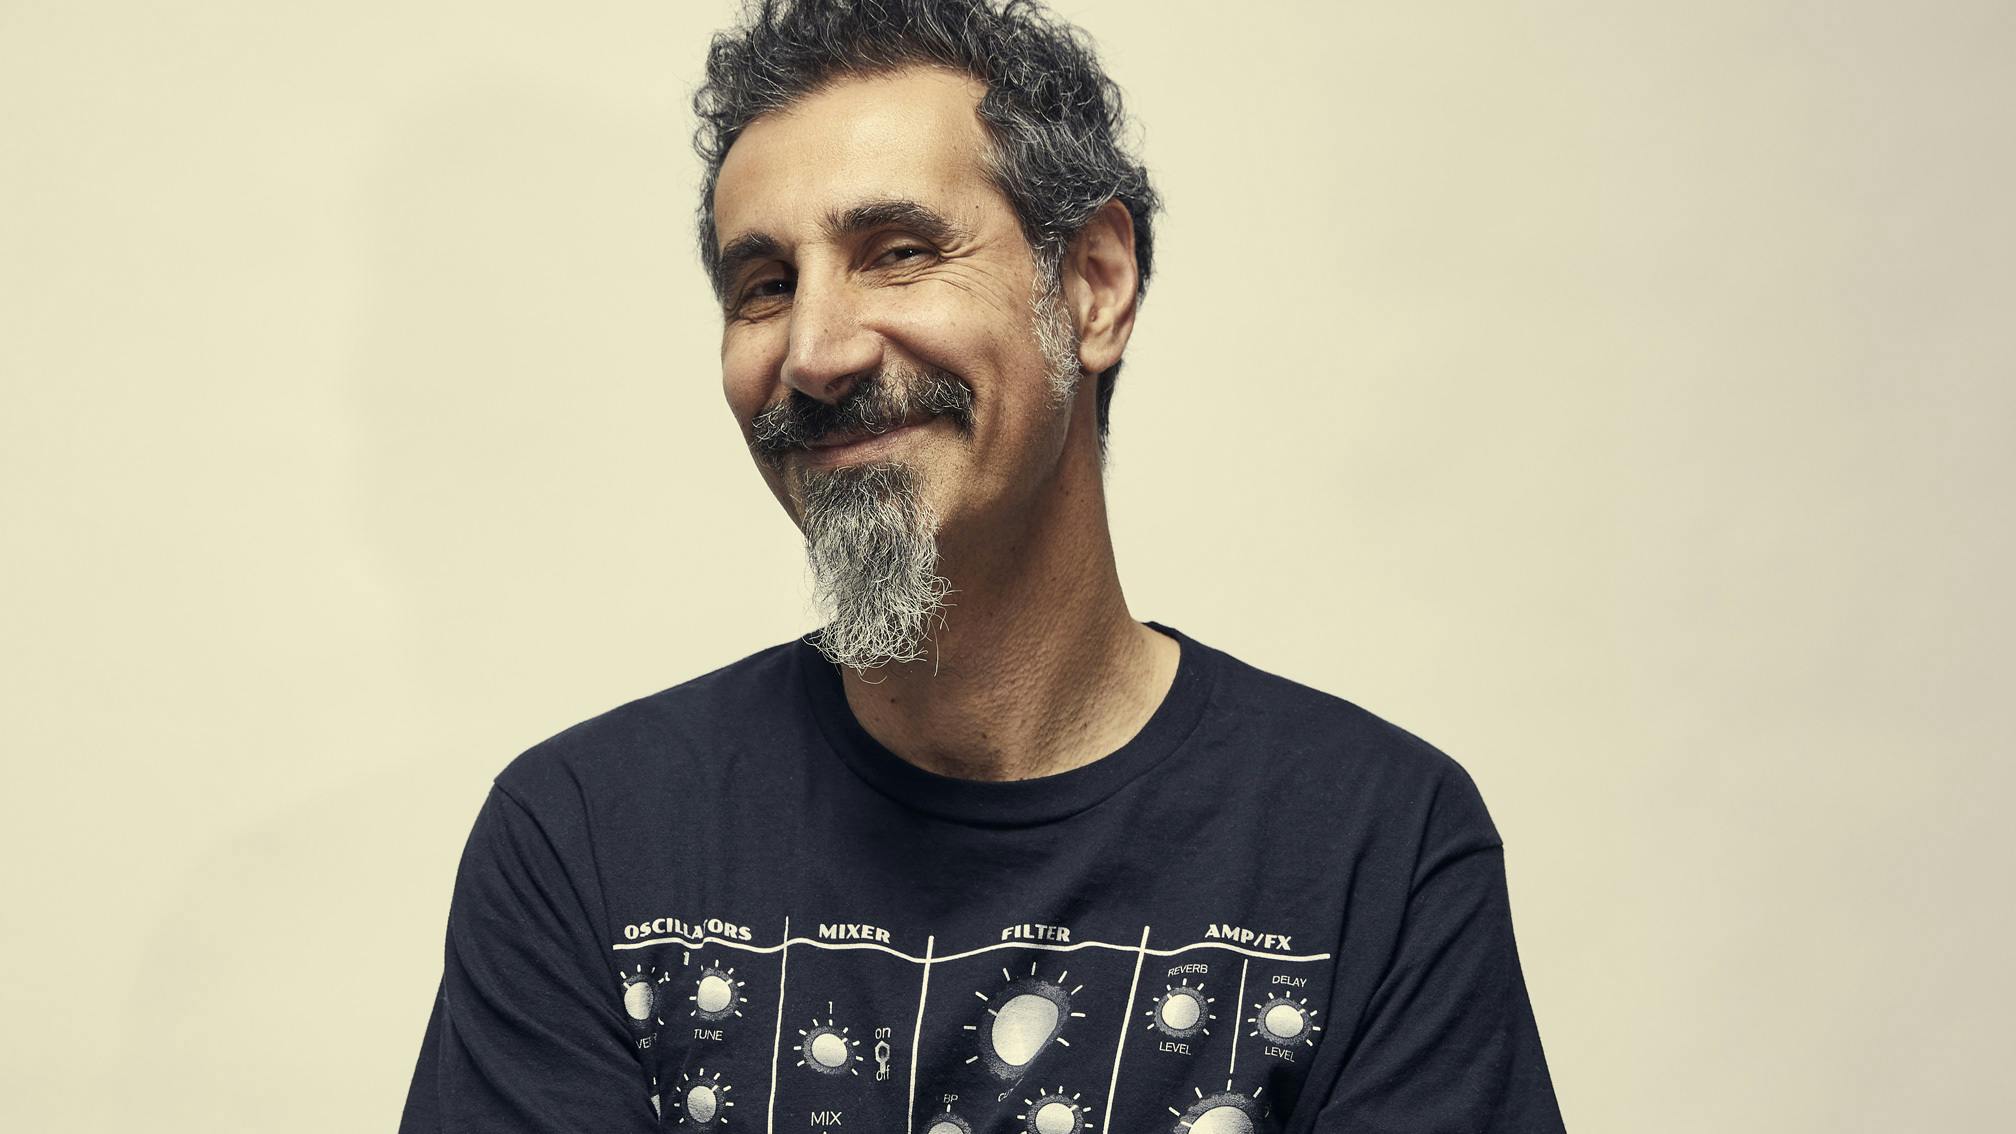 Serj Tankian has announced a memoir, Down With The System